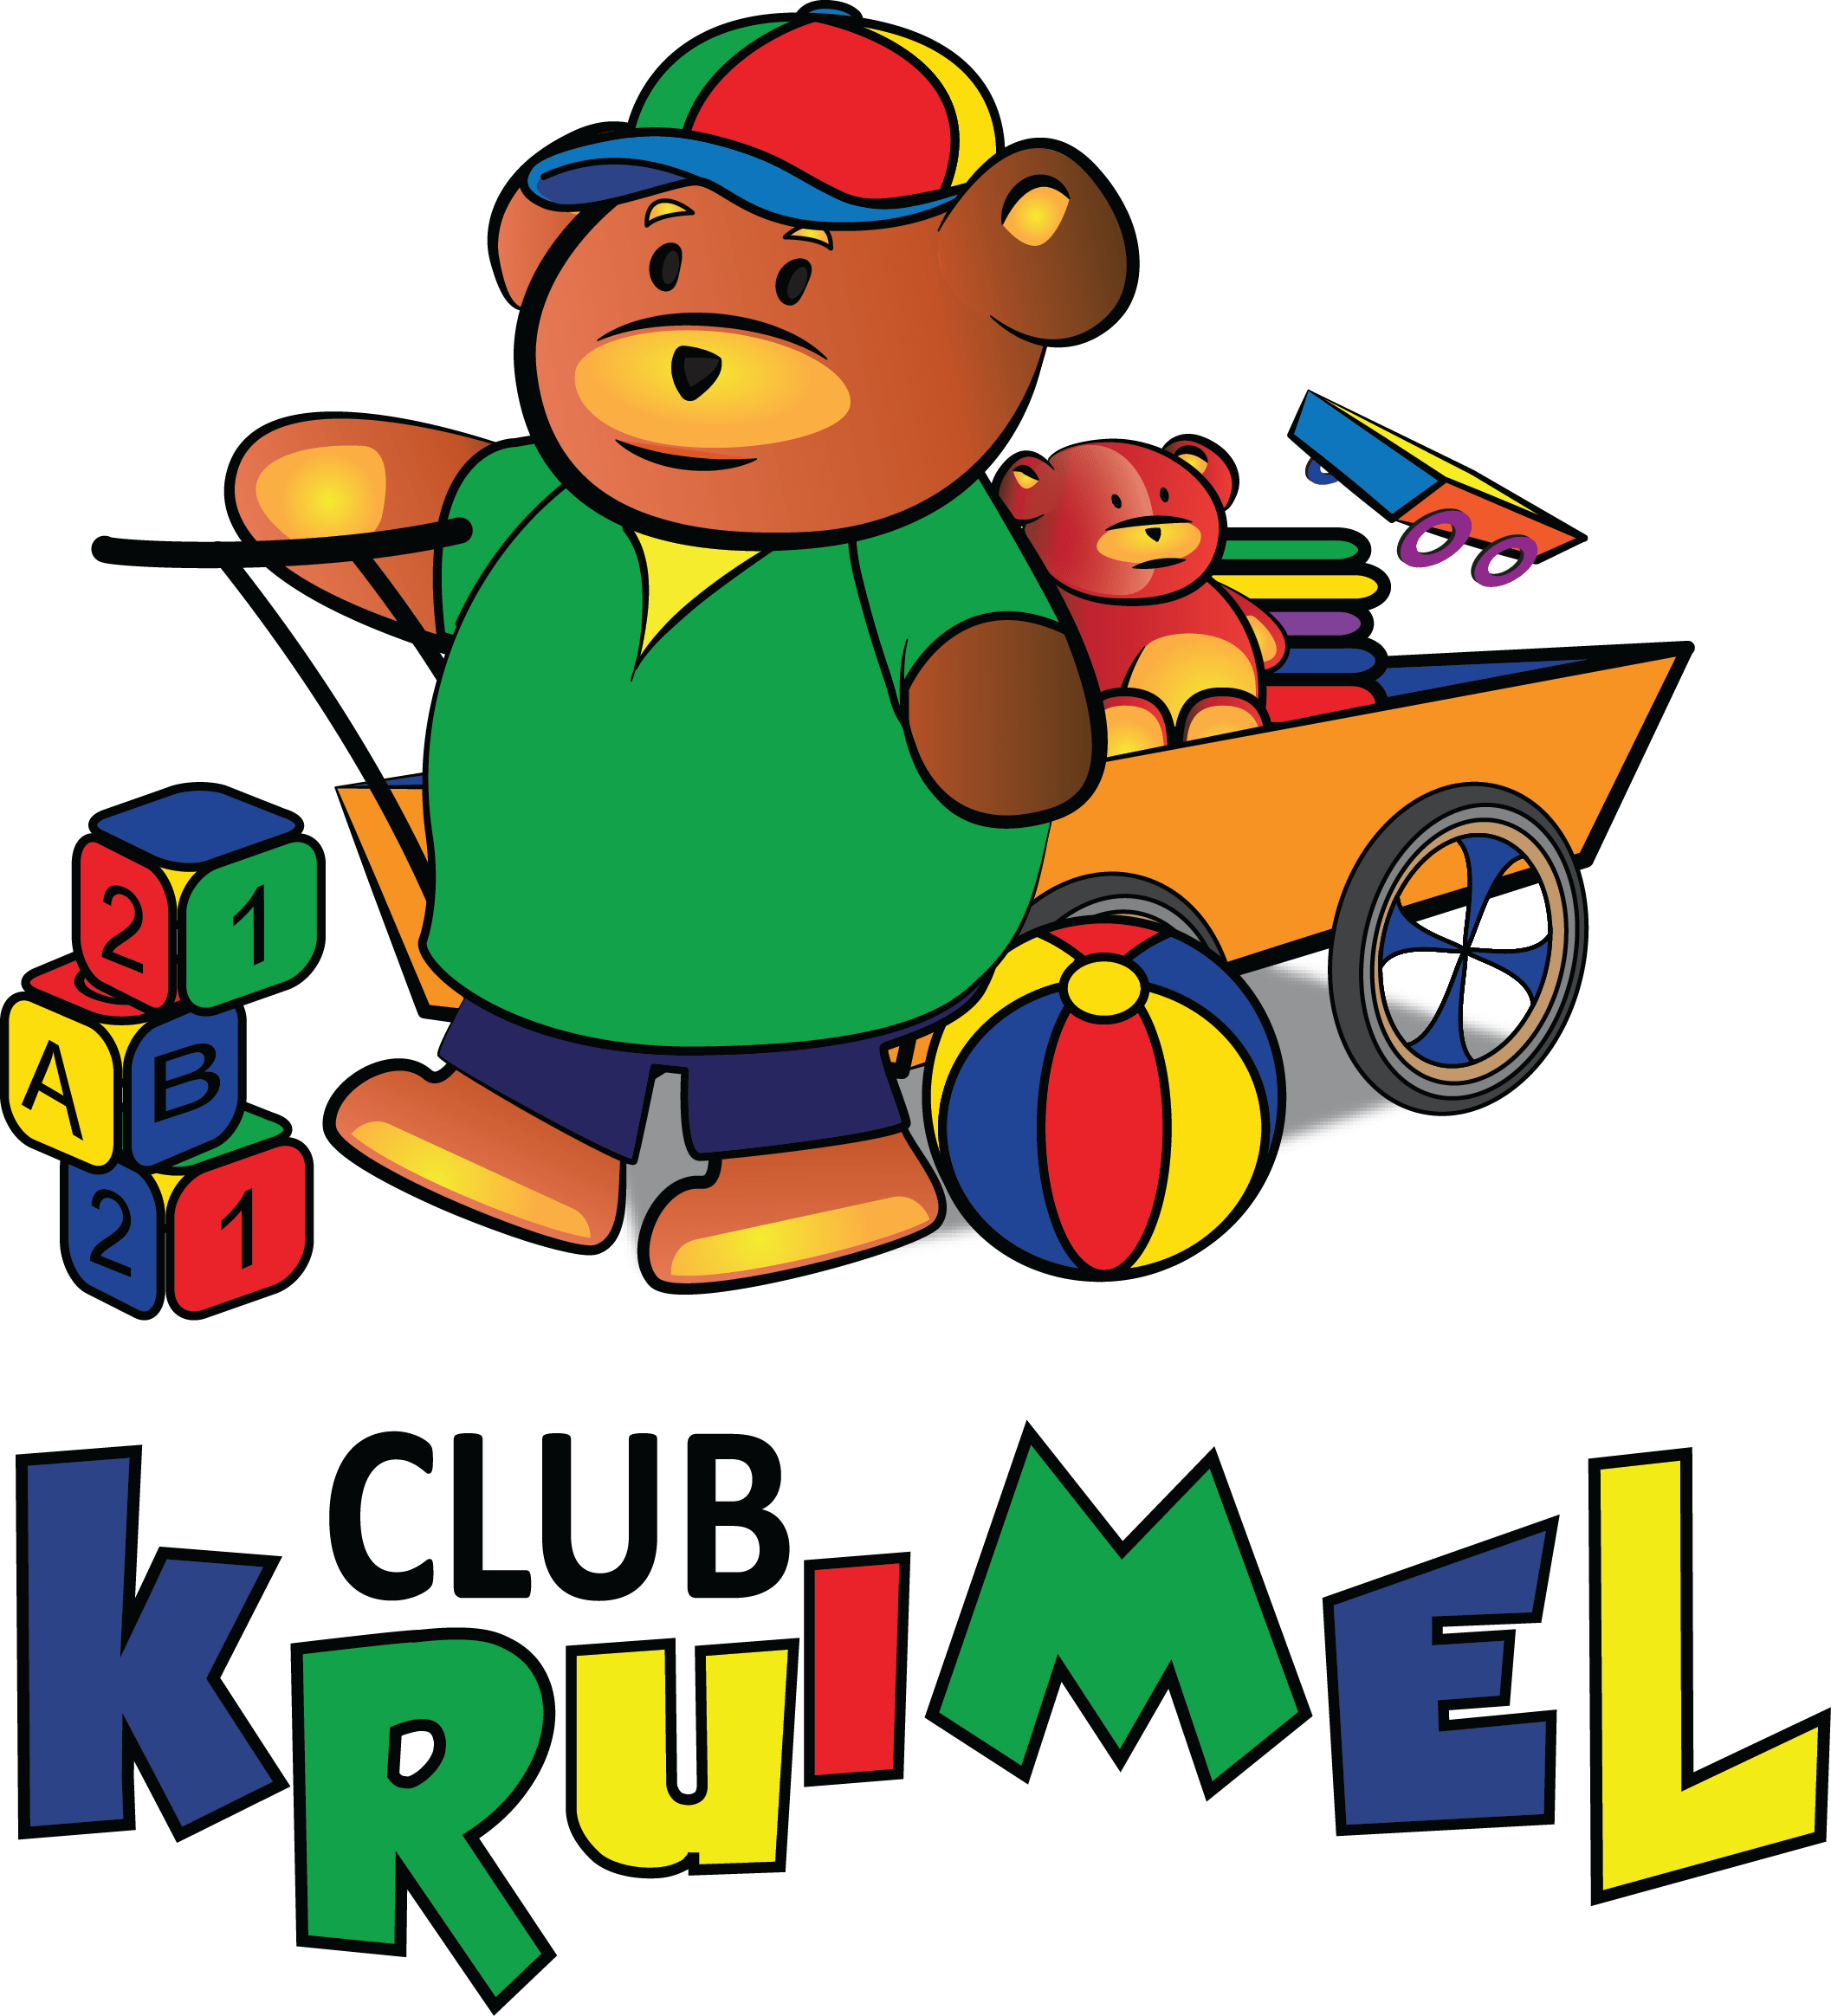 clubkruimel logo 2